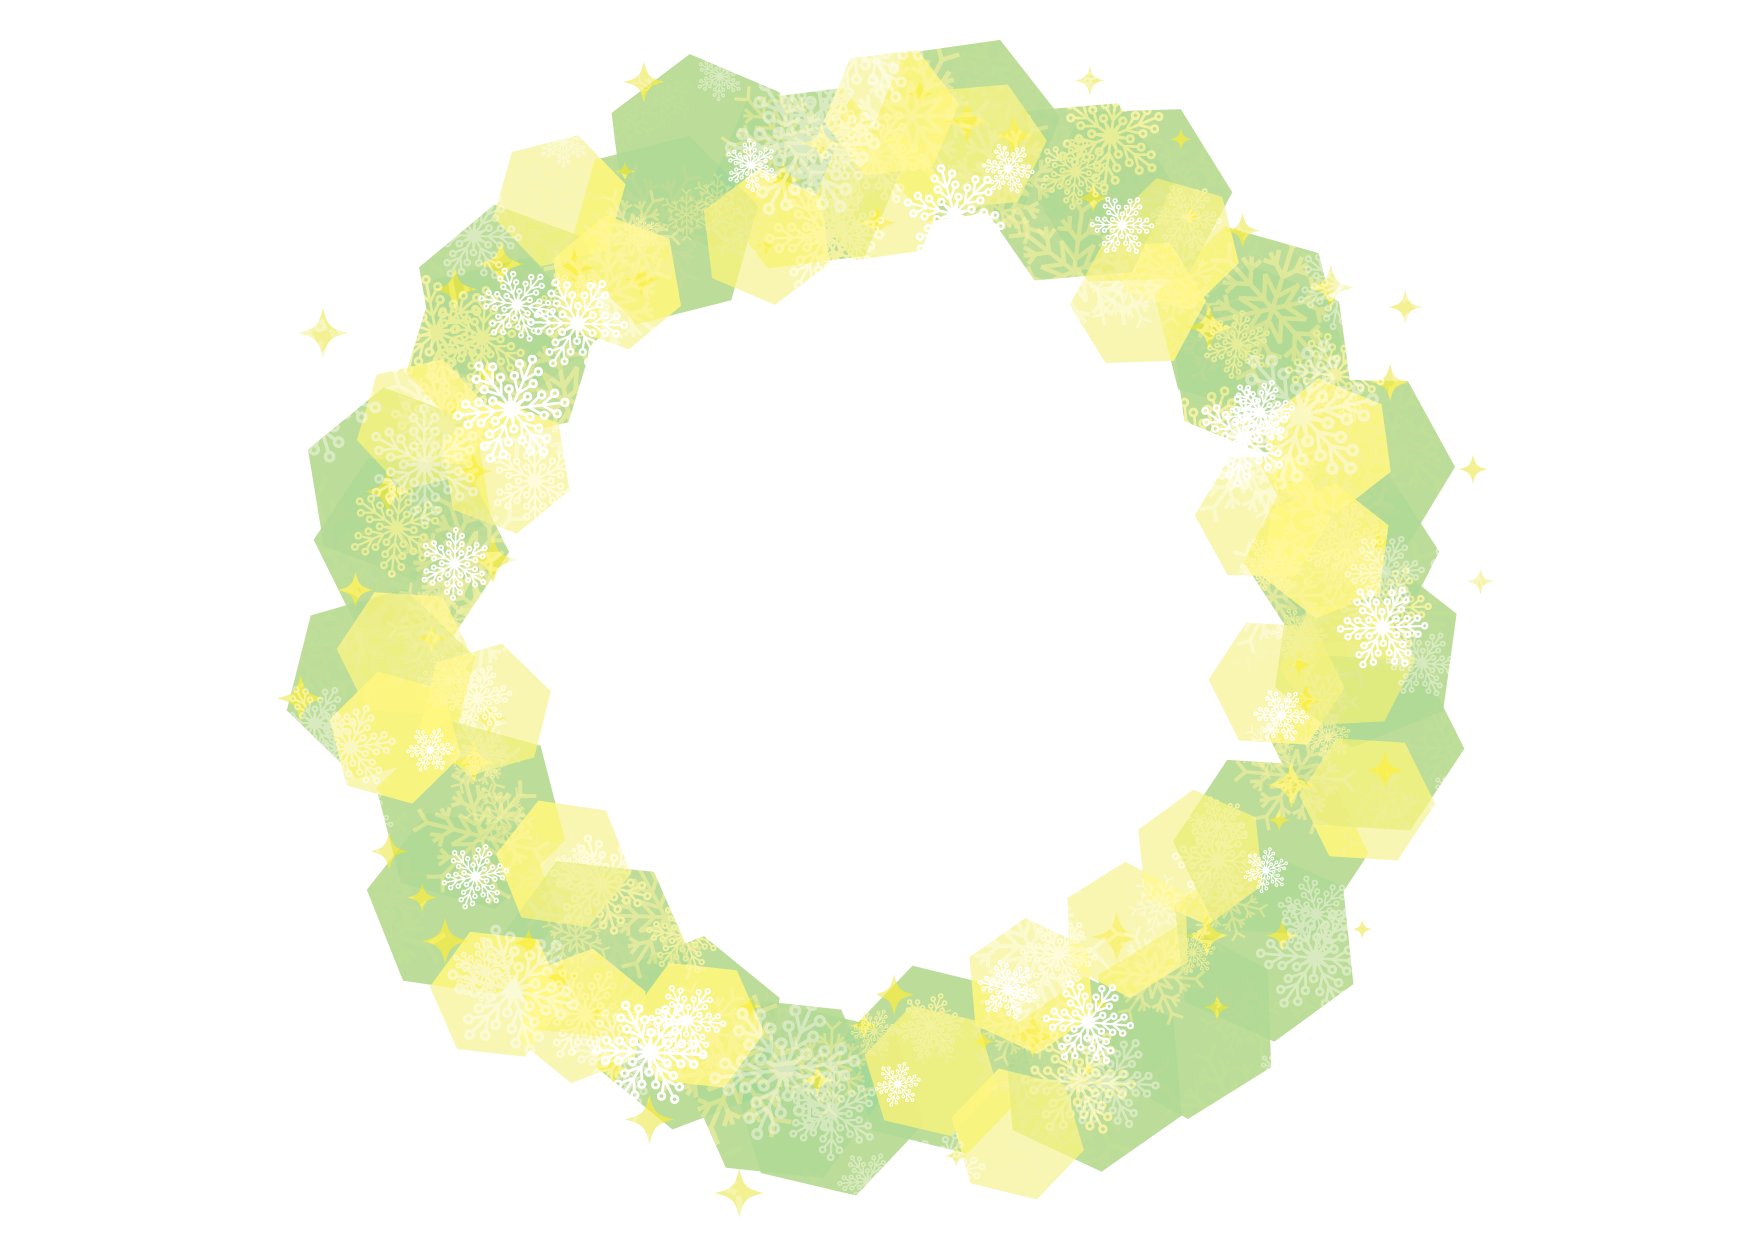 可愛いイラスト無料 雪の結晶 フレーム 背景 緑色 Free Illustration Snowflakes Frame Background Green 公式 イラスト素材サイト イラストダウンロード